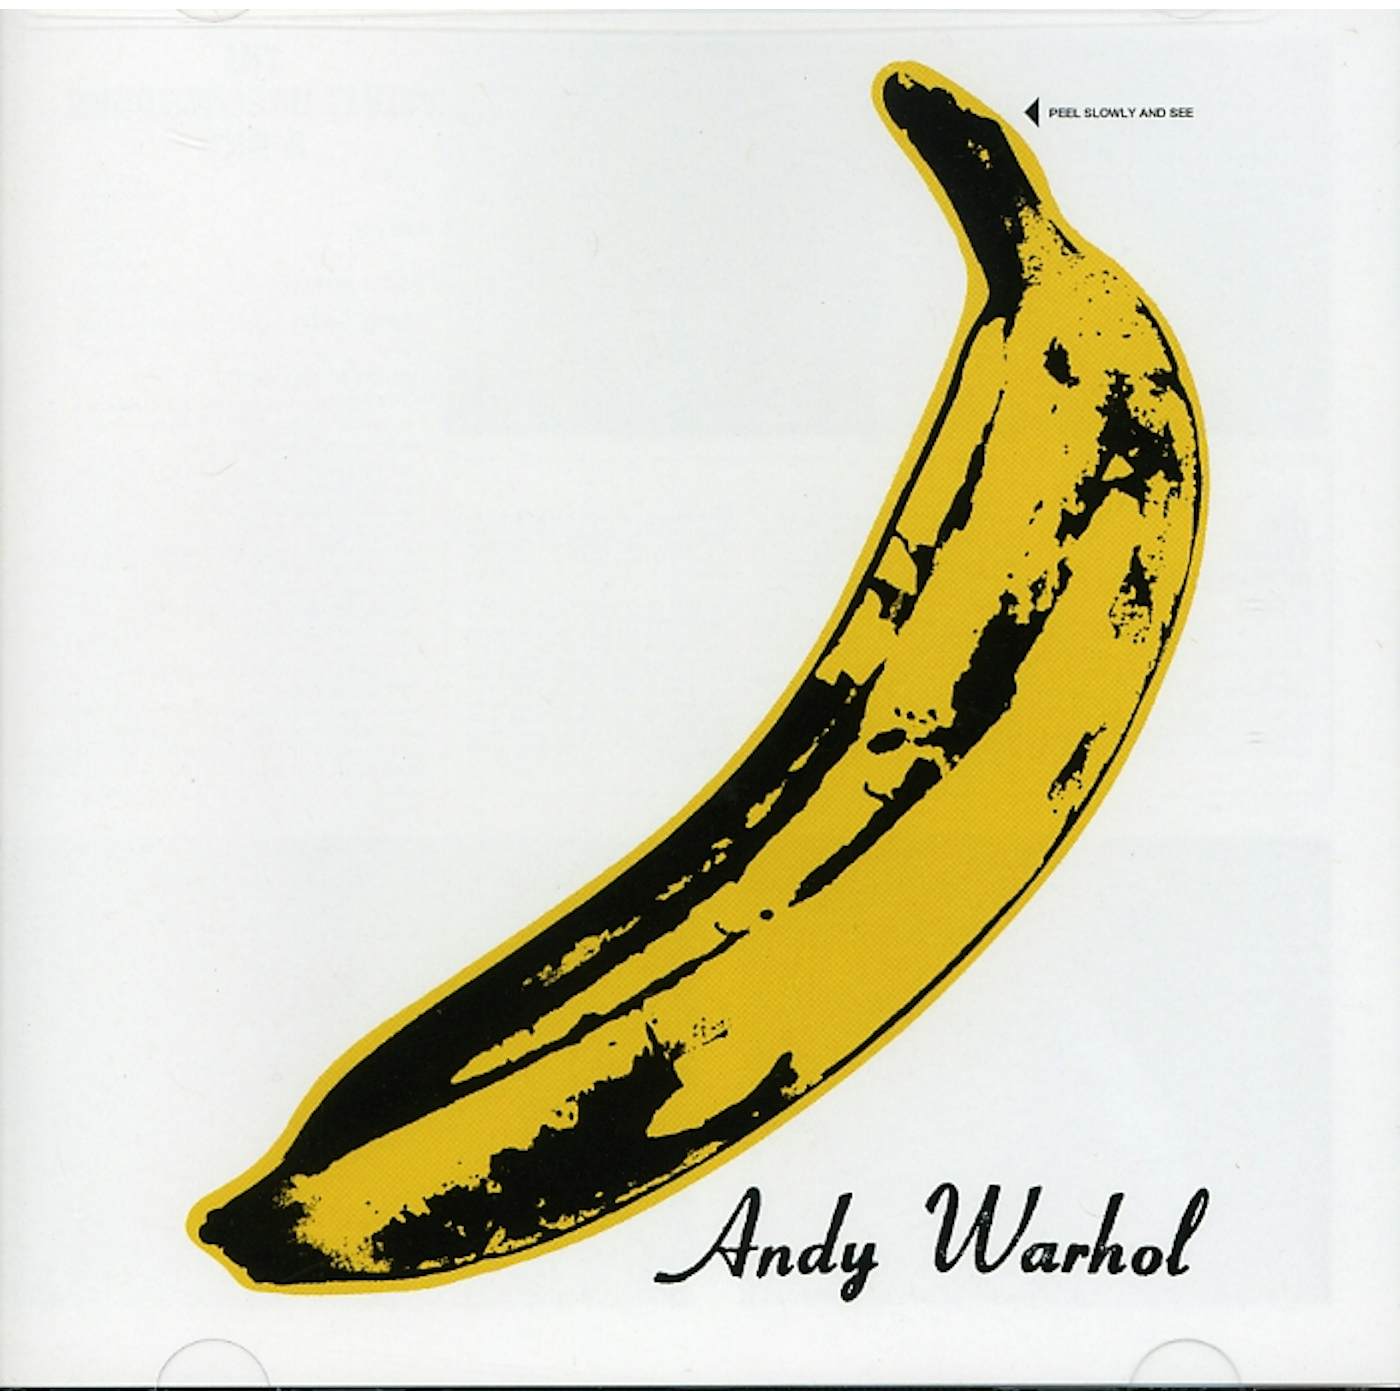 The Velvet Underground CD